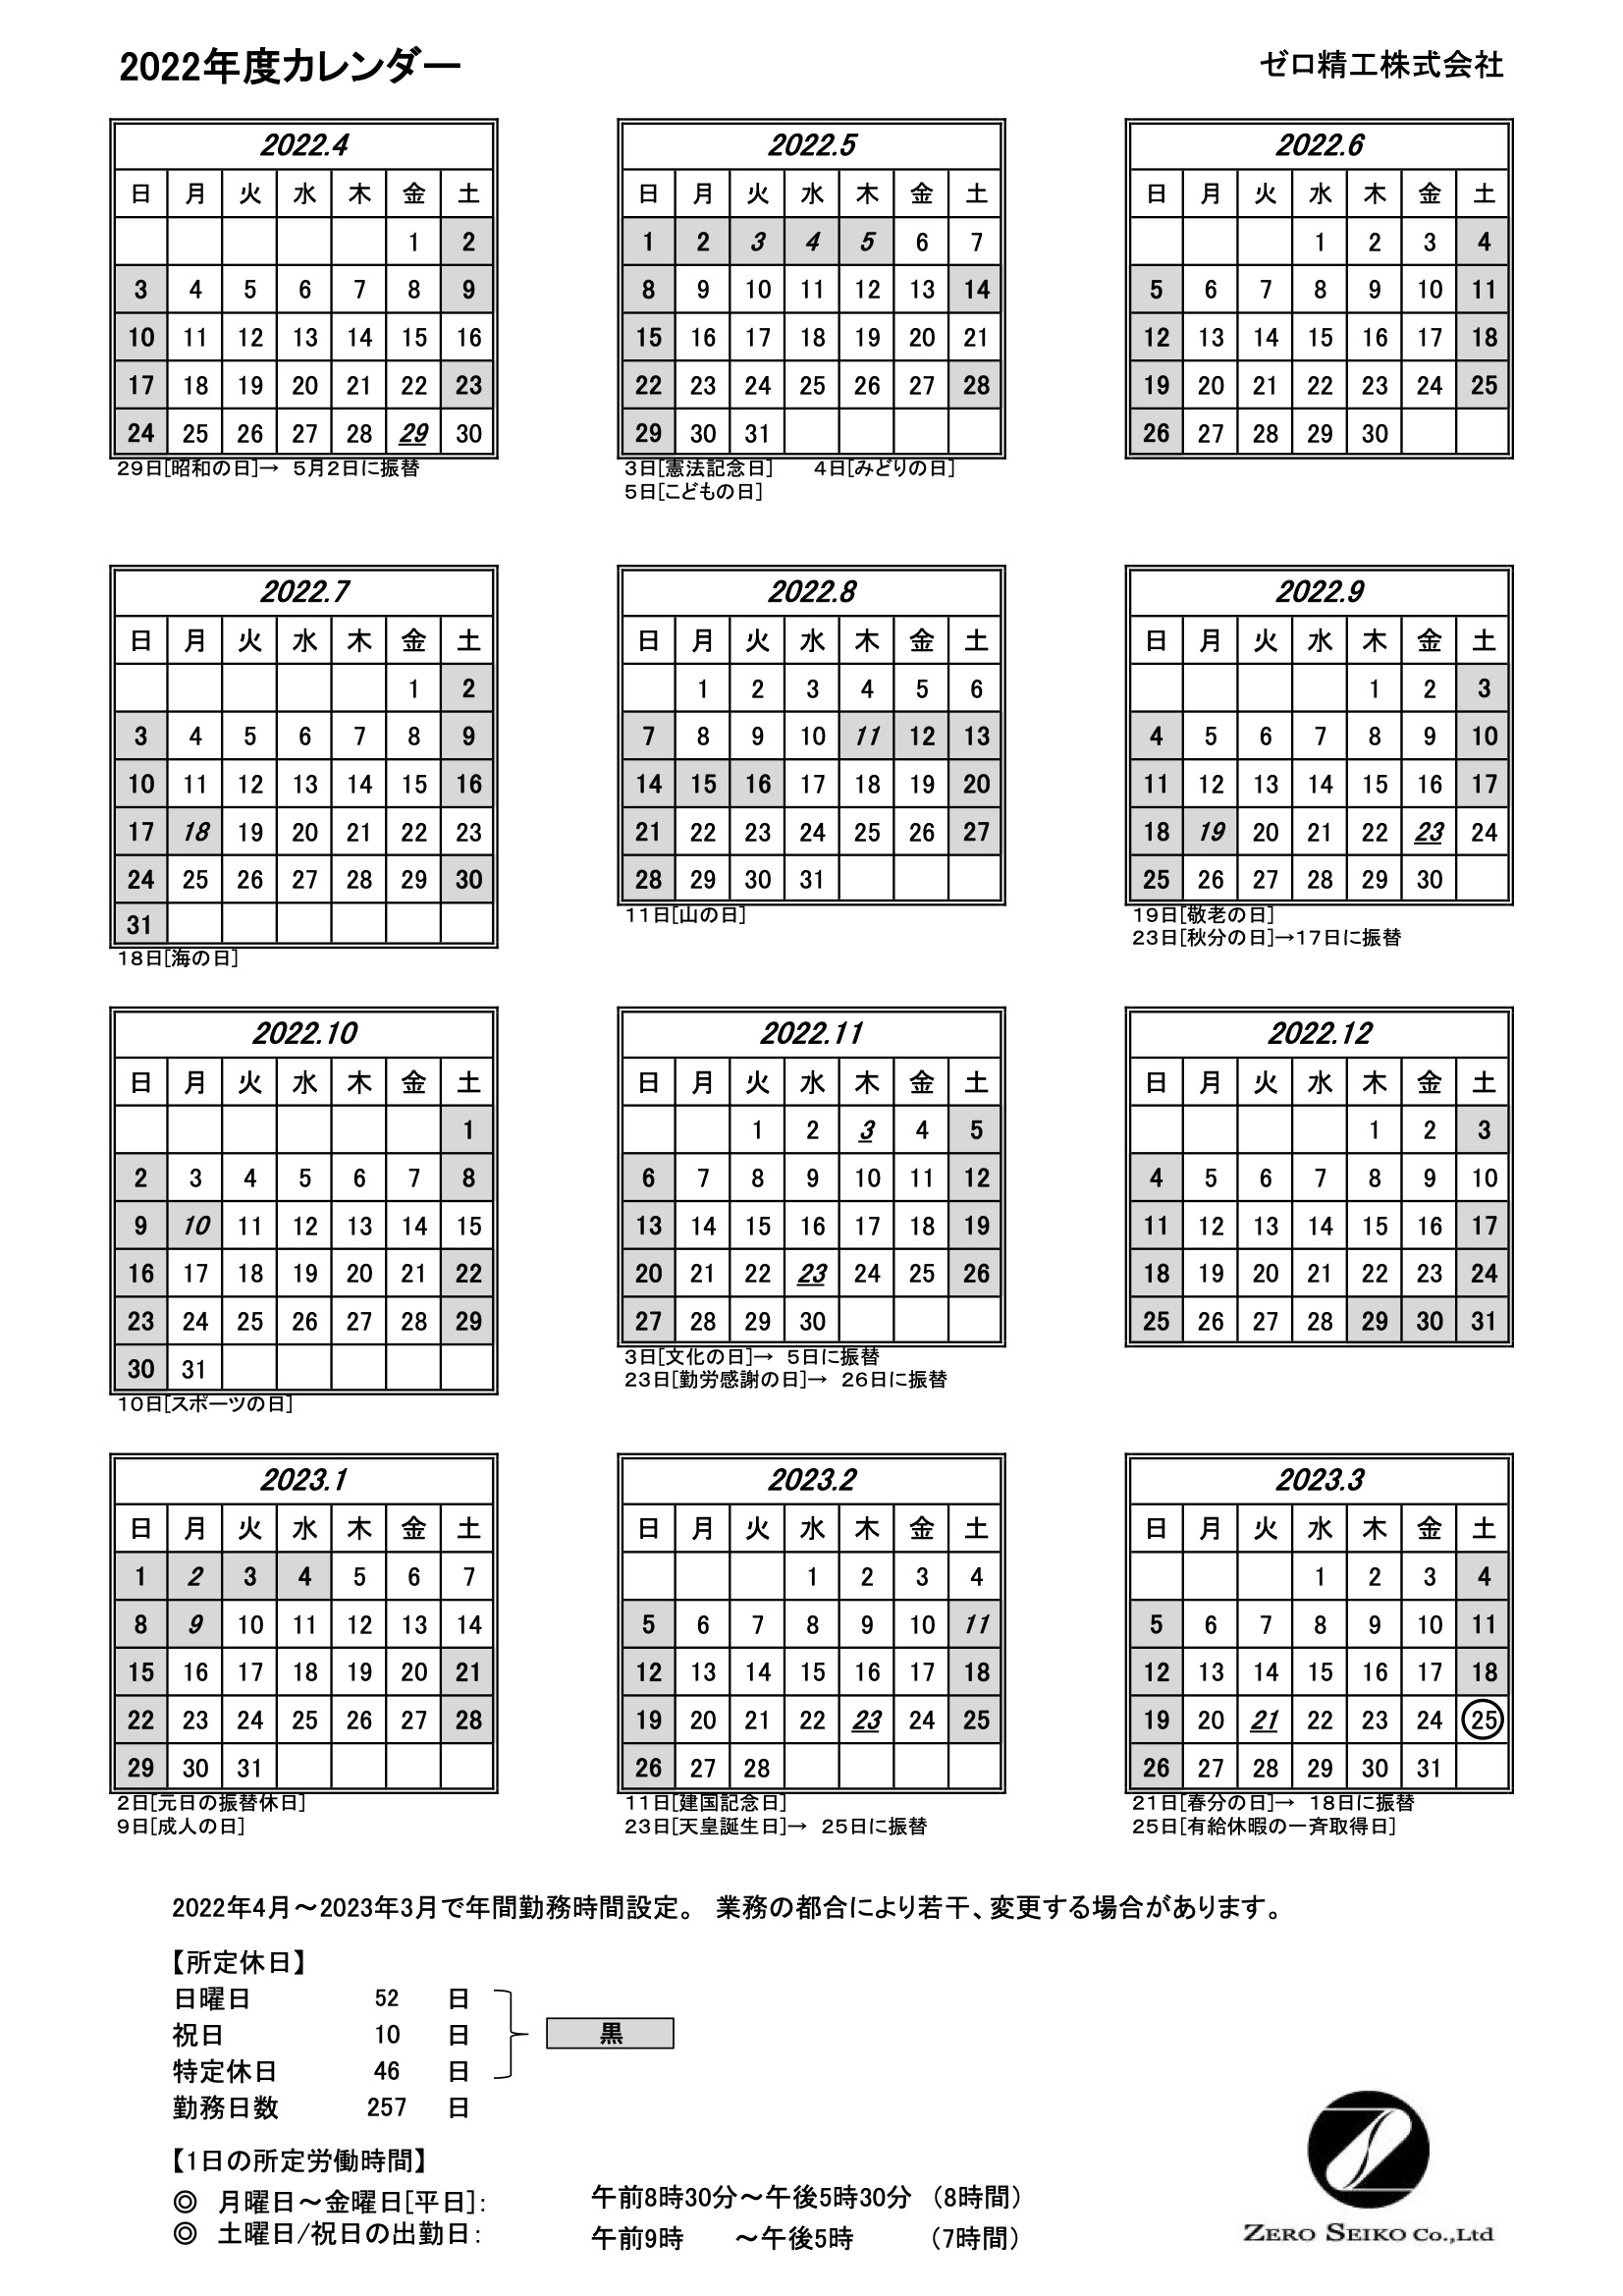 22年度営業日カレンダー 22 4 5 更新 尼崎のjis Q 9100認証取得企業 ゼロ精工株式会社